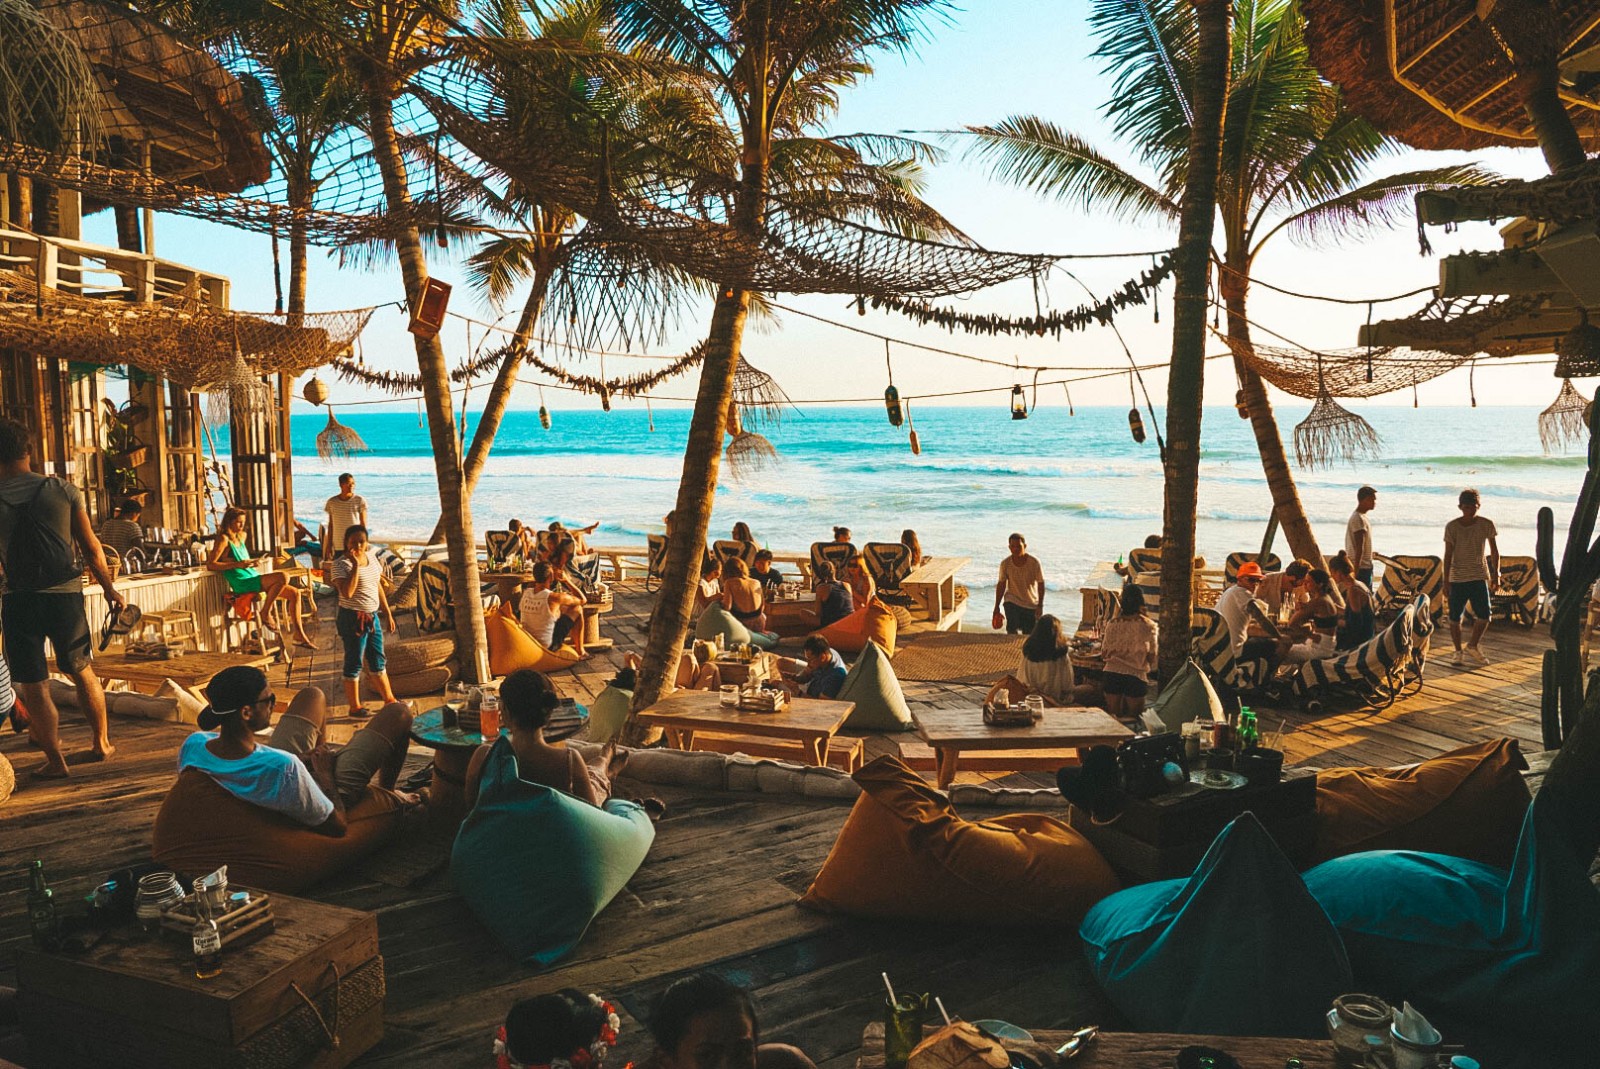 Bali sẽ mang đến cho bạn cảm giác của không gian tuyệt mỹ, của hội hè náo nhiệt và cả của những trải nghiệm mua sắm bất tận